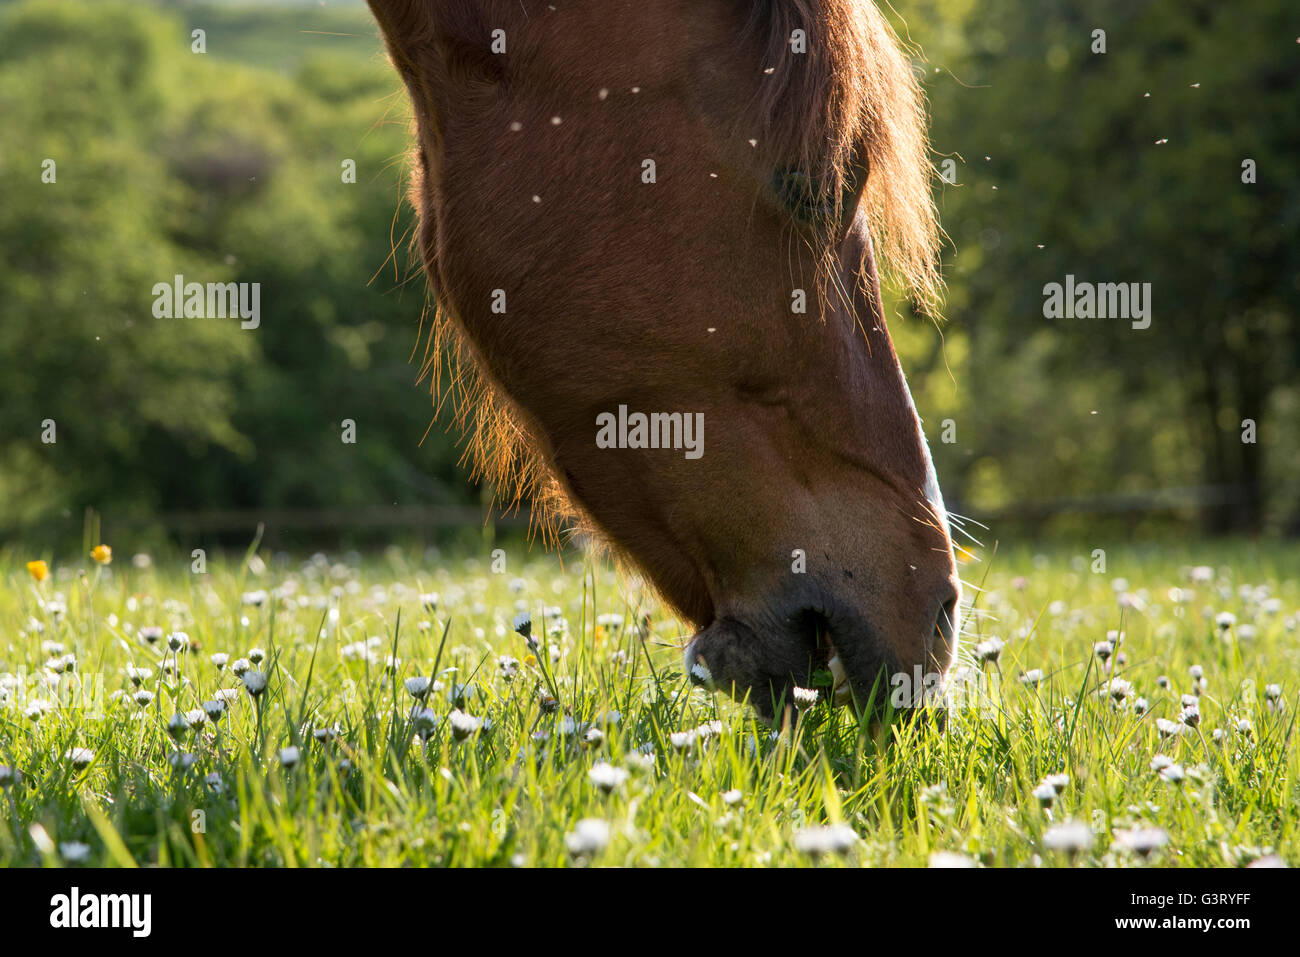 Castagno pascolo pony un campo con mosche attorno alla sua testa. Pratoline nell'erba. Foto Stock